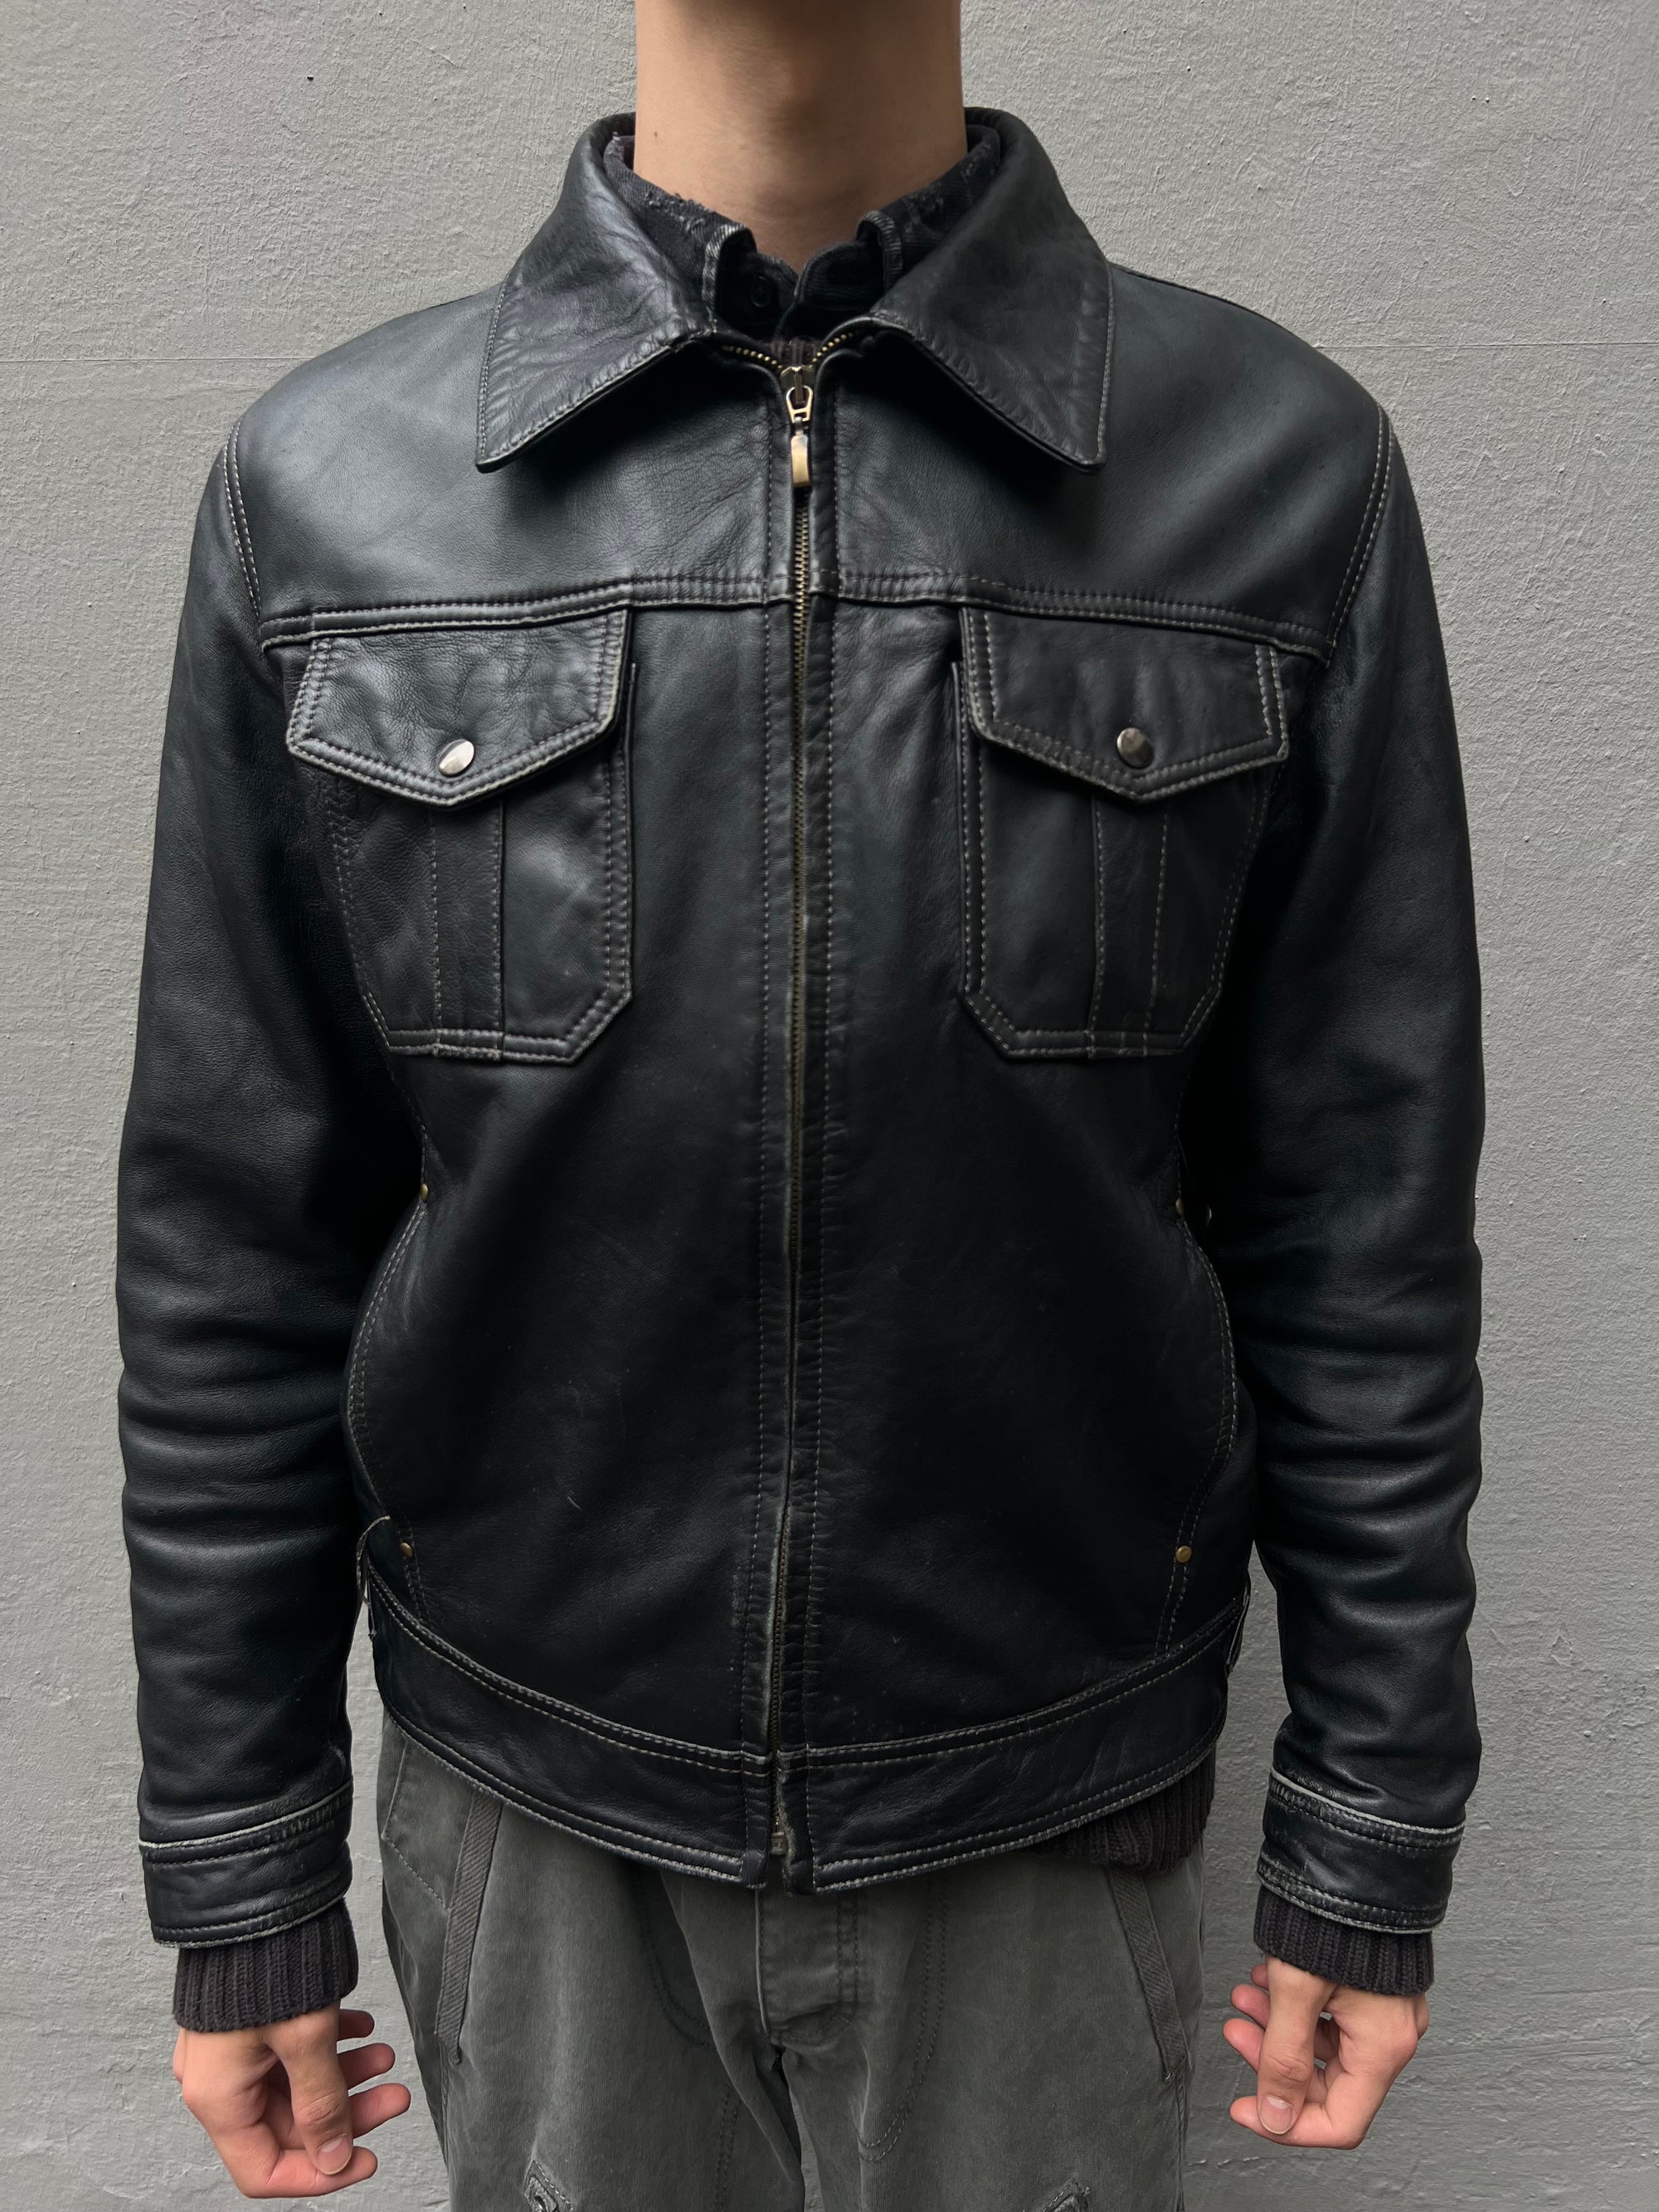 Vintage Australian Leather Bomber Jacket L/XL